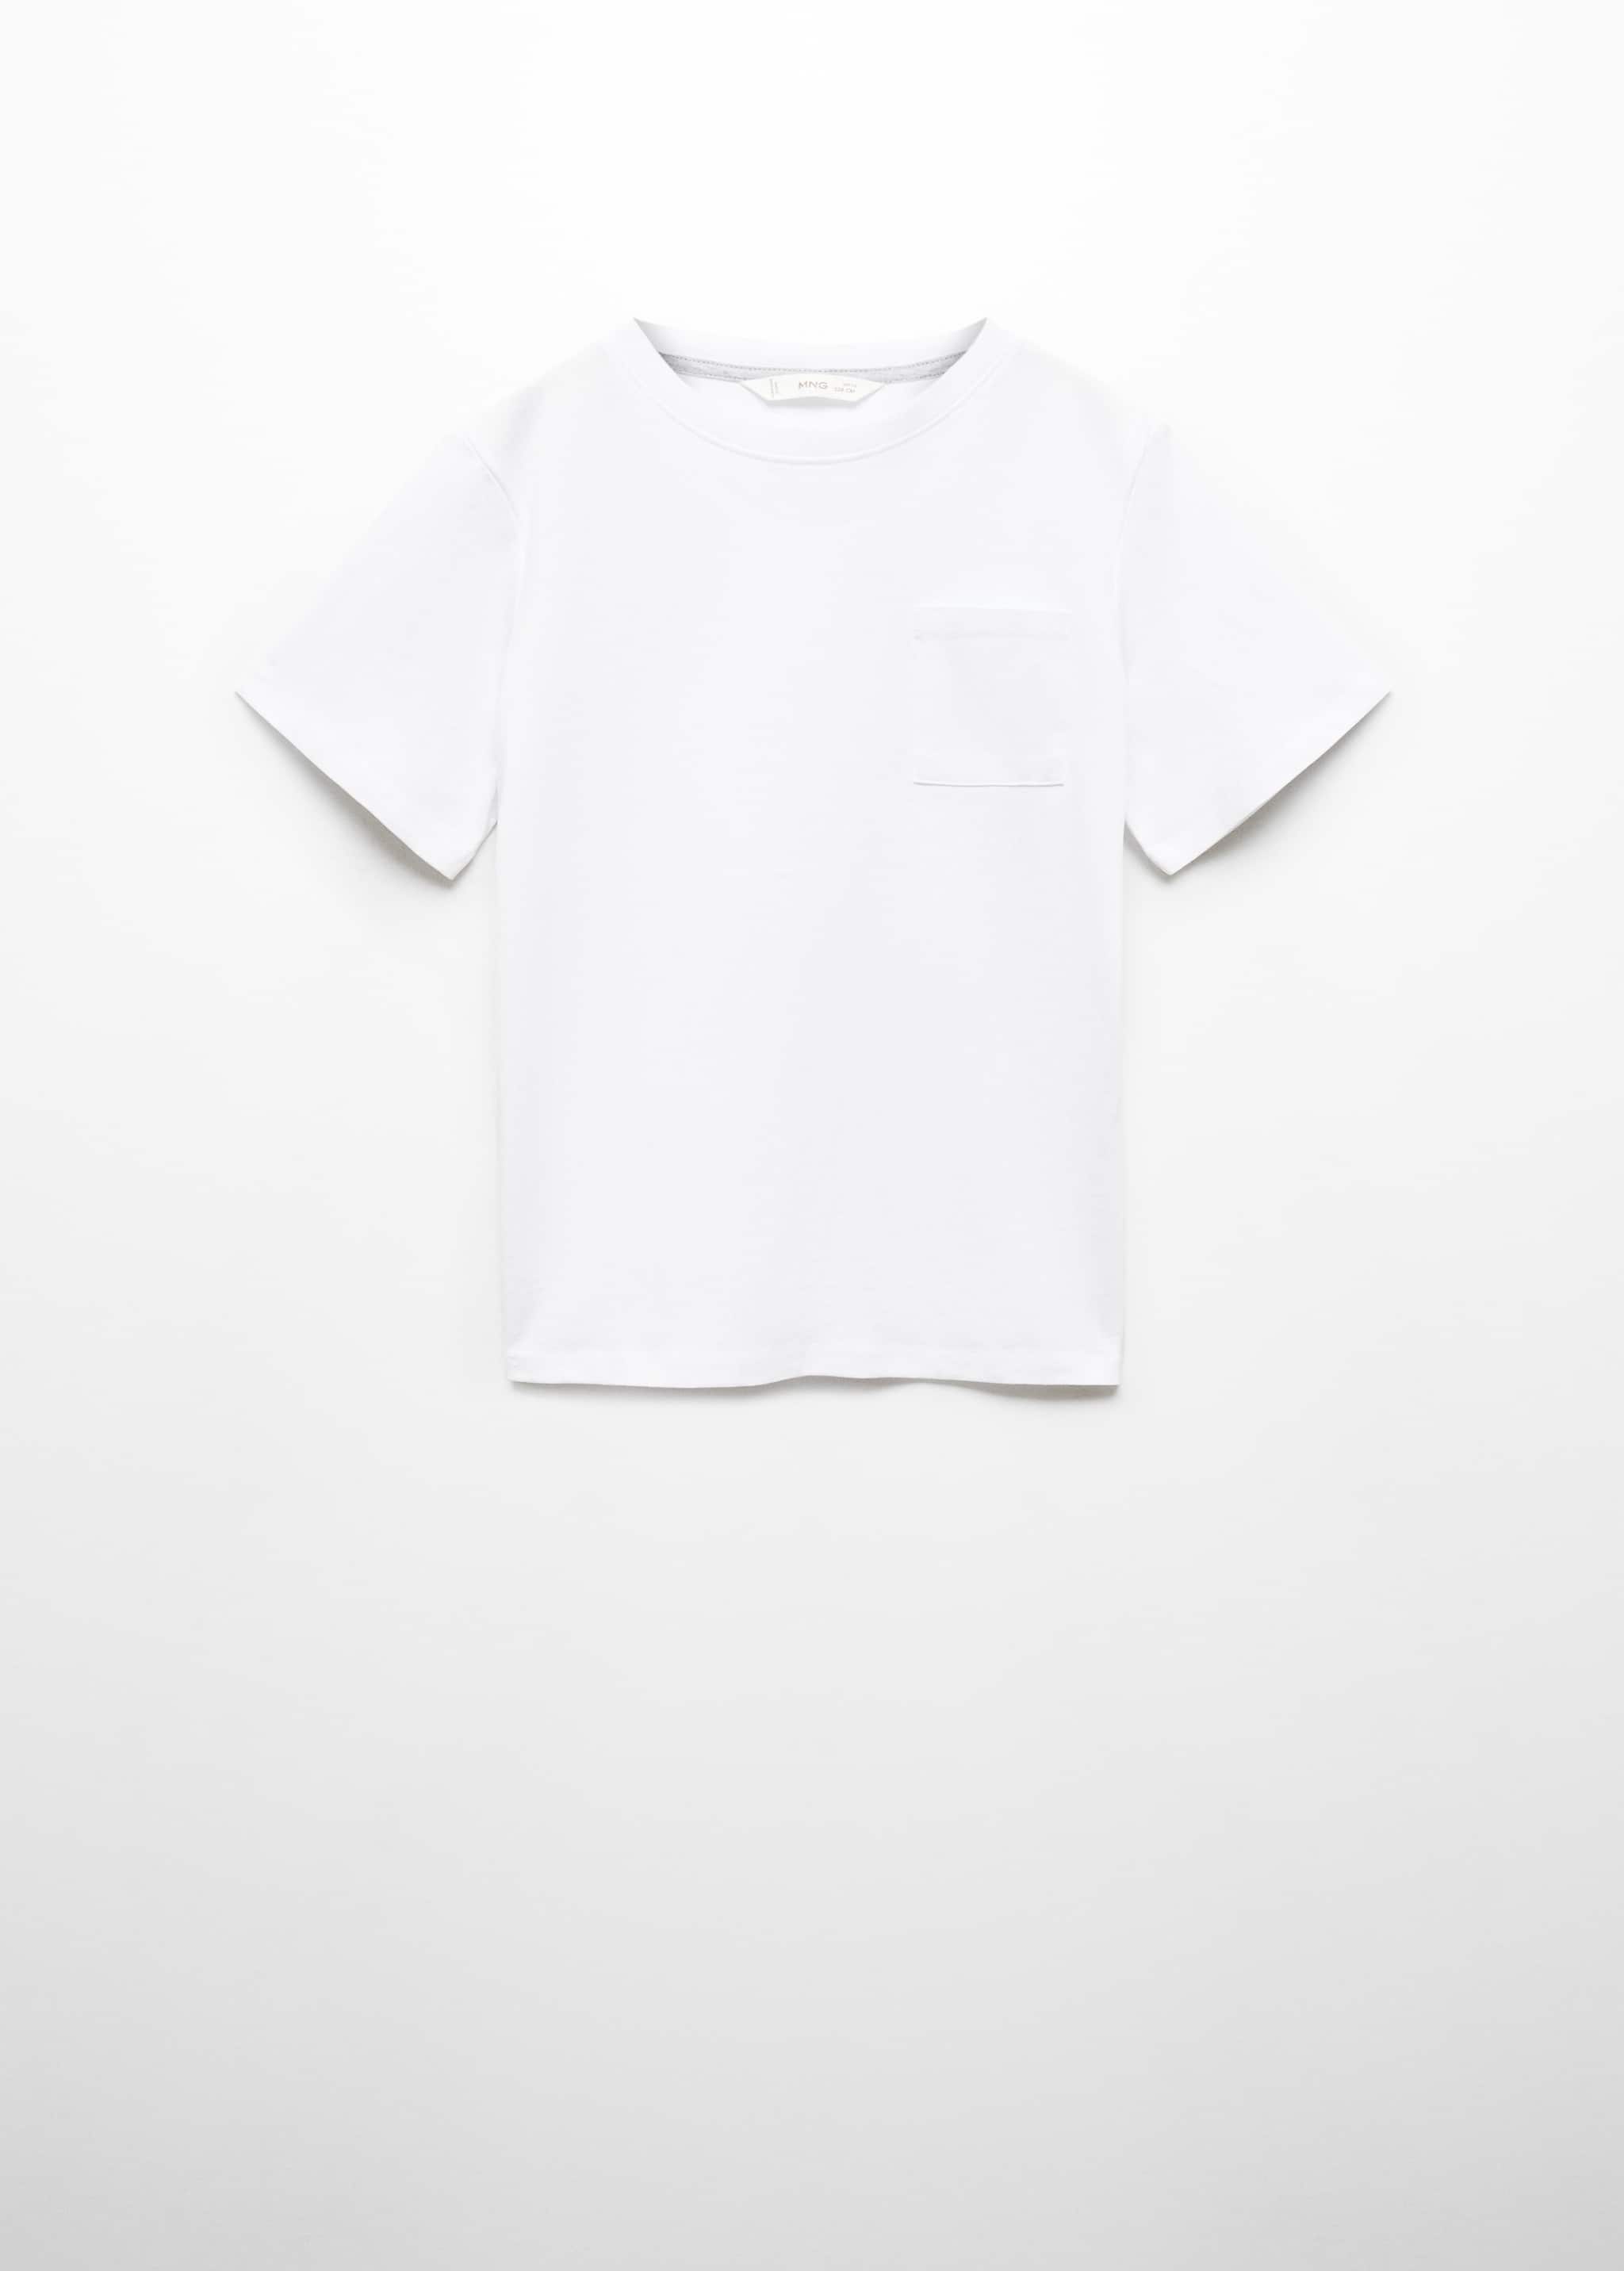 Camiseta básica algodón - Artículo sin modelo